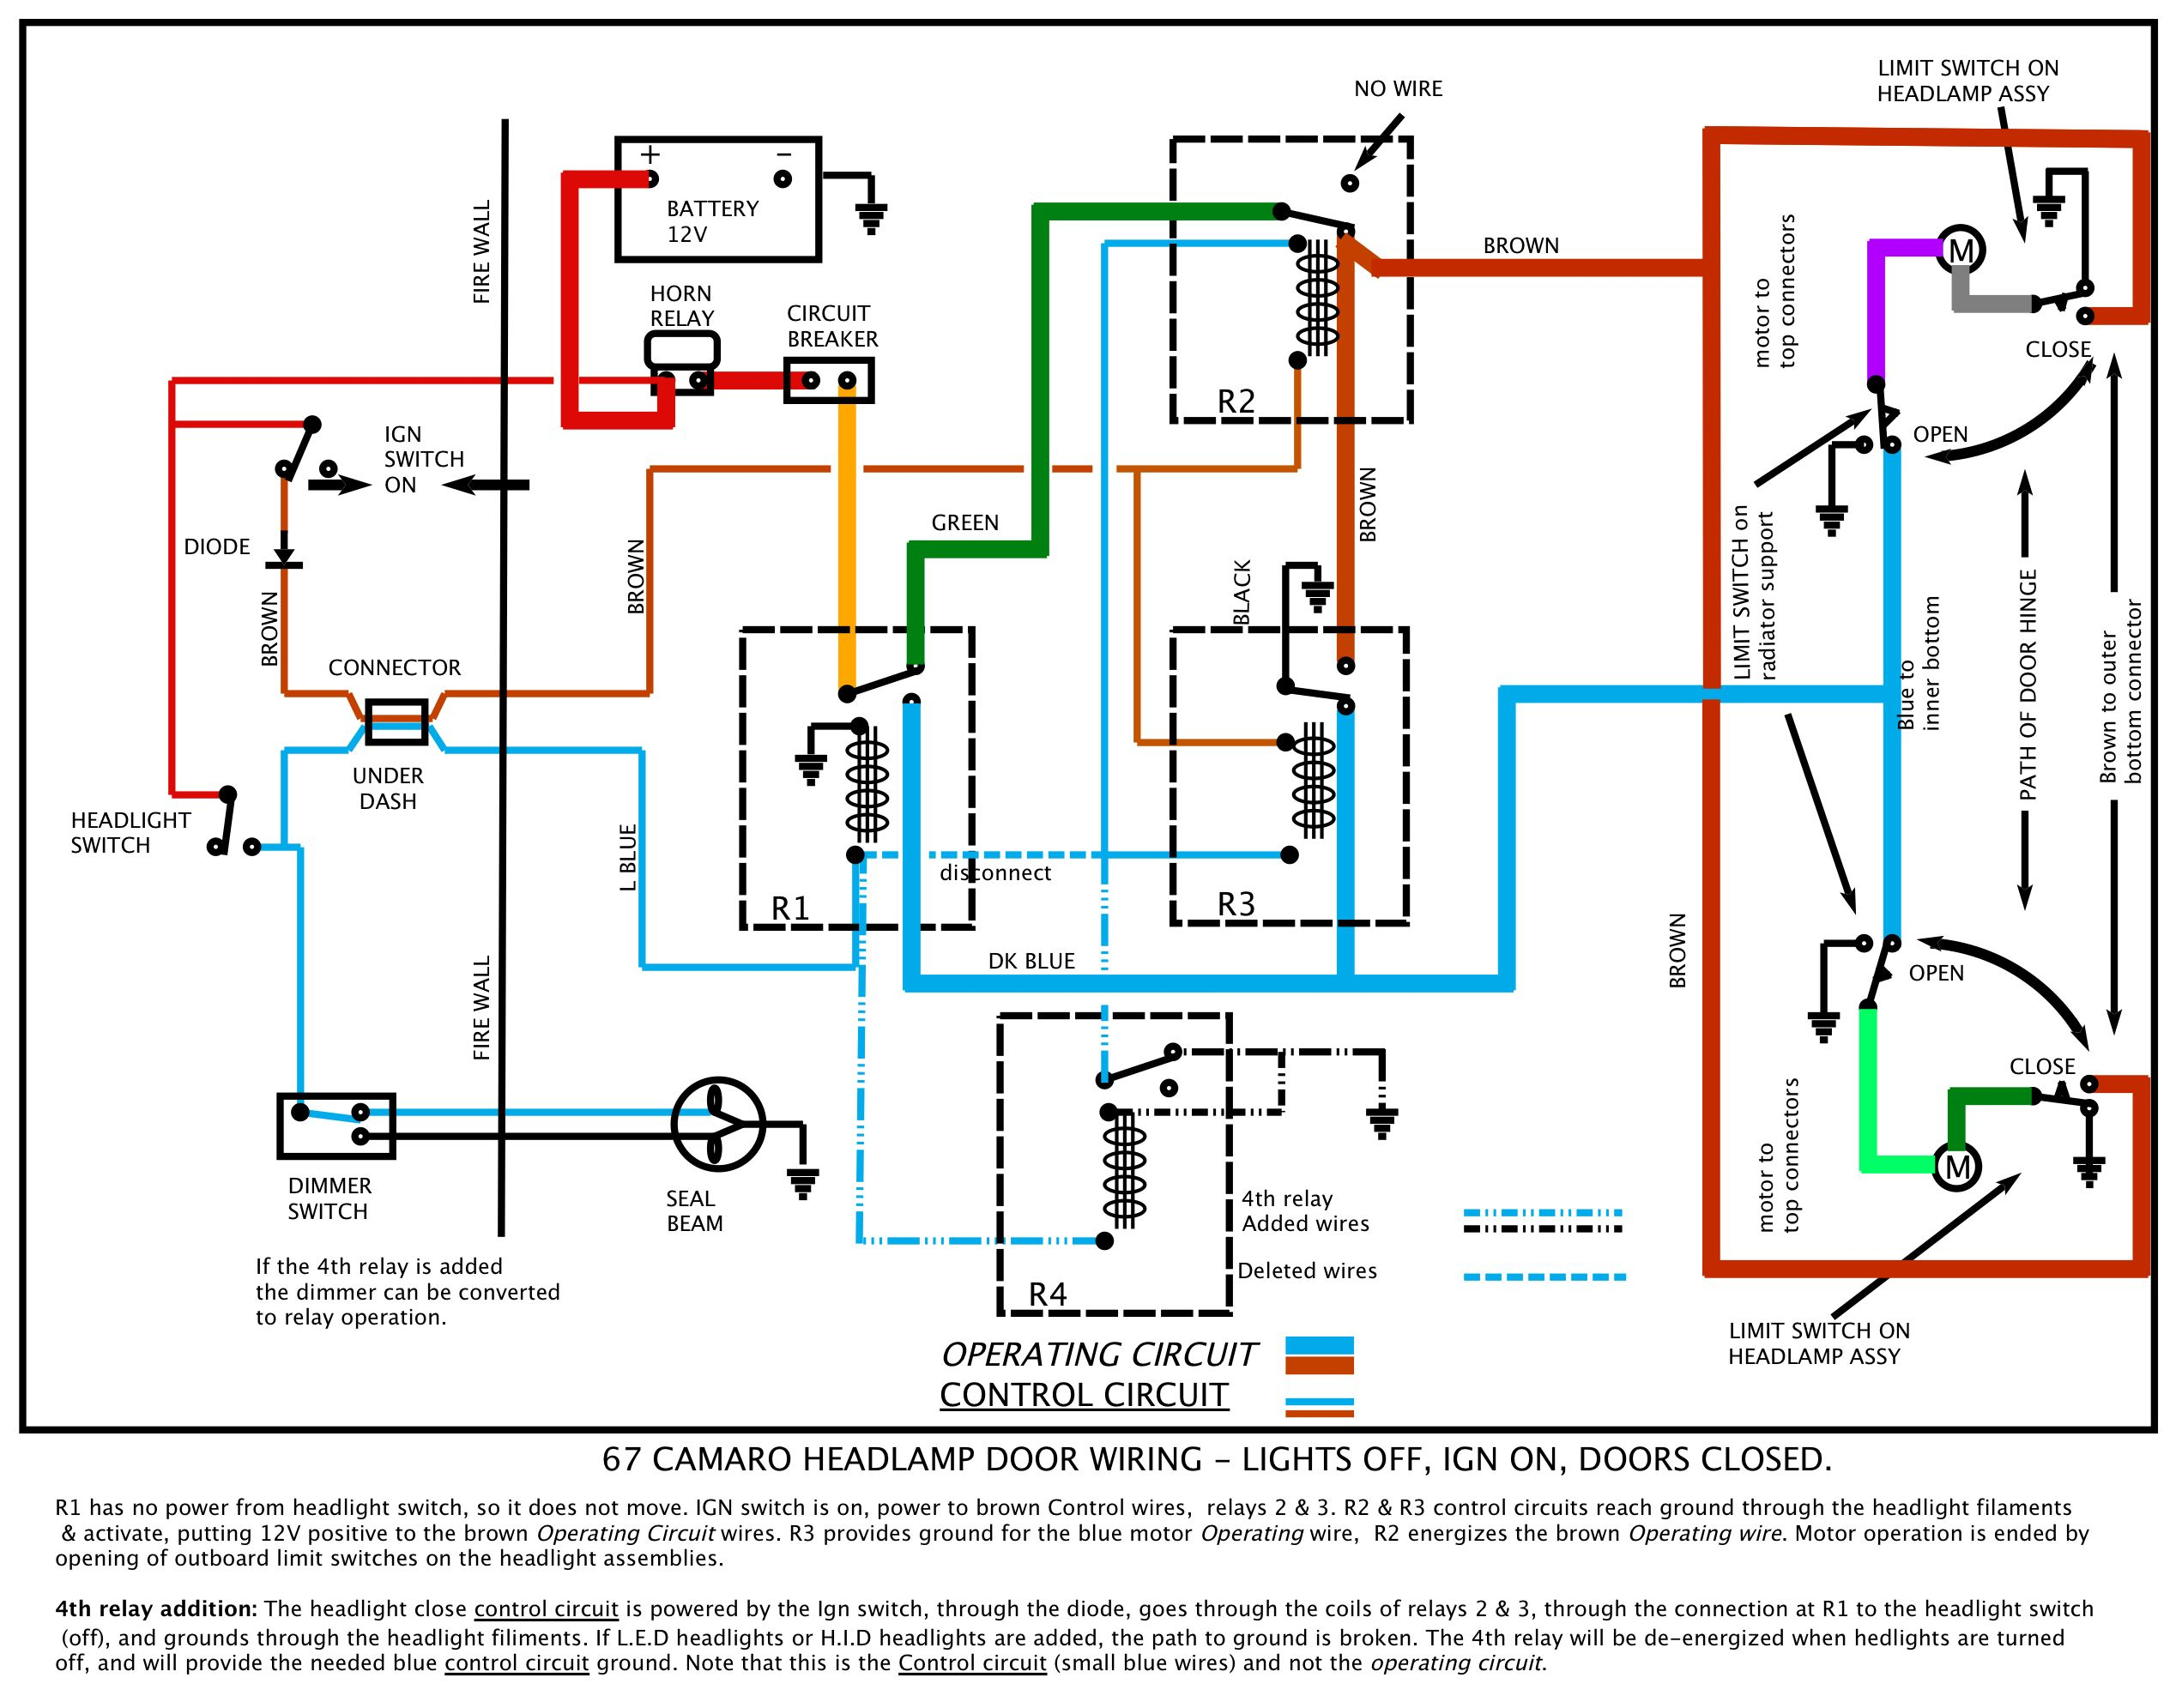 H4 Wiring Upgrade Diagram 67 Camaro | Wiring Diagram - H4 Wiring Diagram